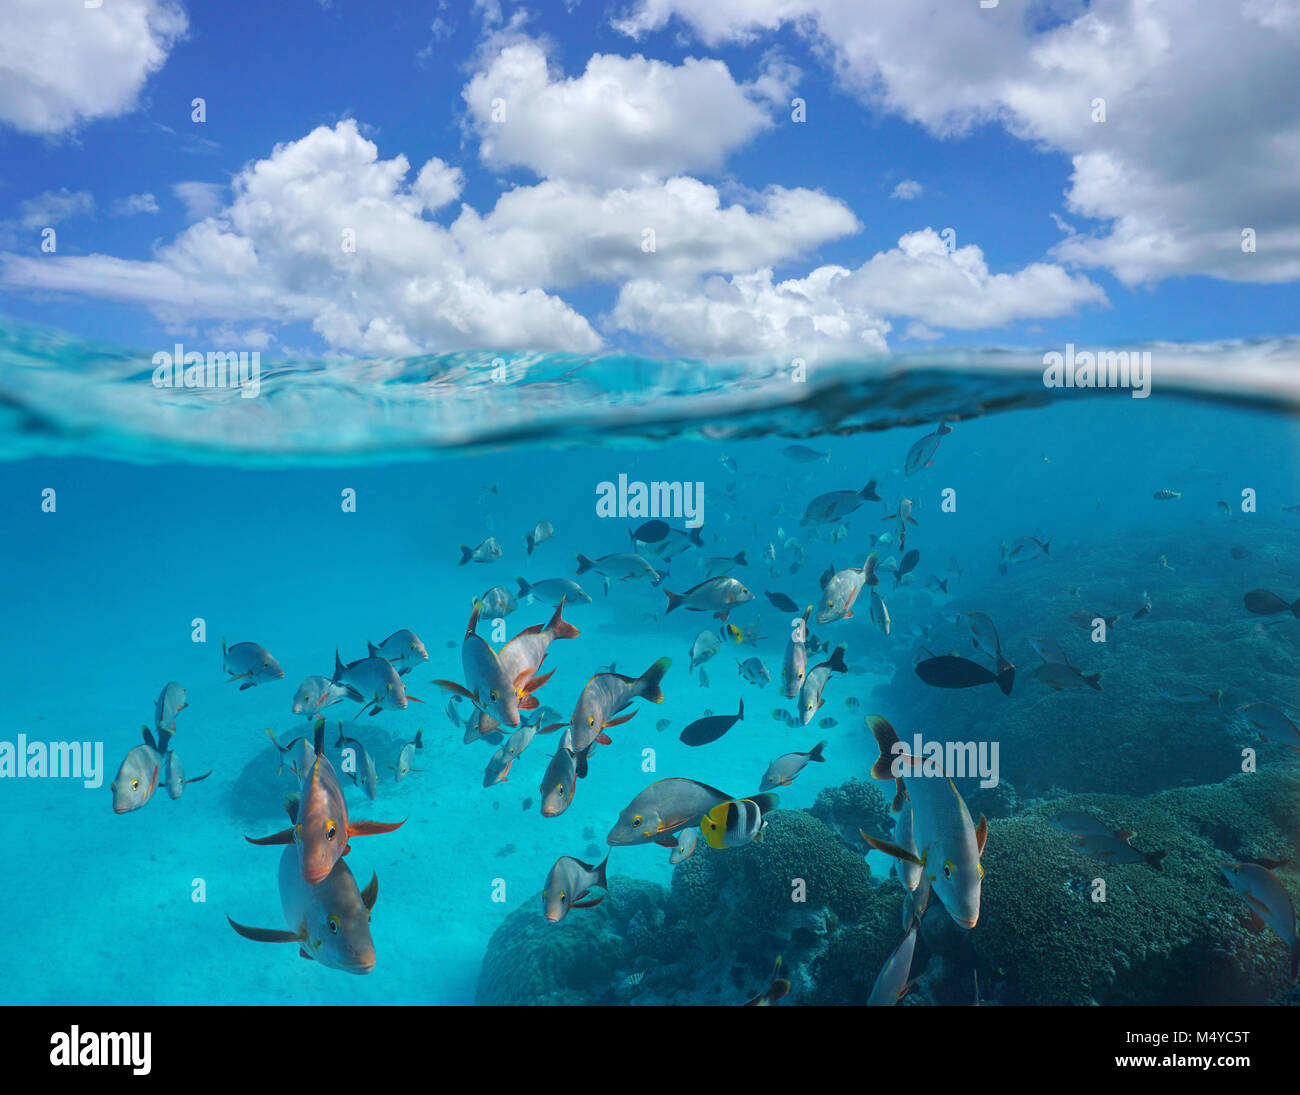 Nuvoloso cielo blu e secca di pesce tropicale con corallo subacqueo, vista suddivisa al di sopra e al di sotto della superficie dell'acqua, Rangiroa, oceano pacifico, Polinesia Francese Foto Stock